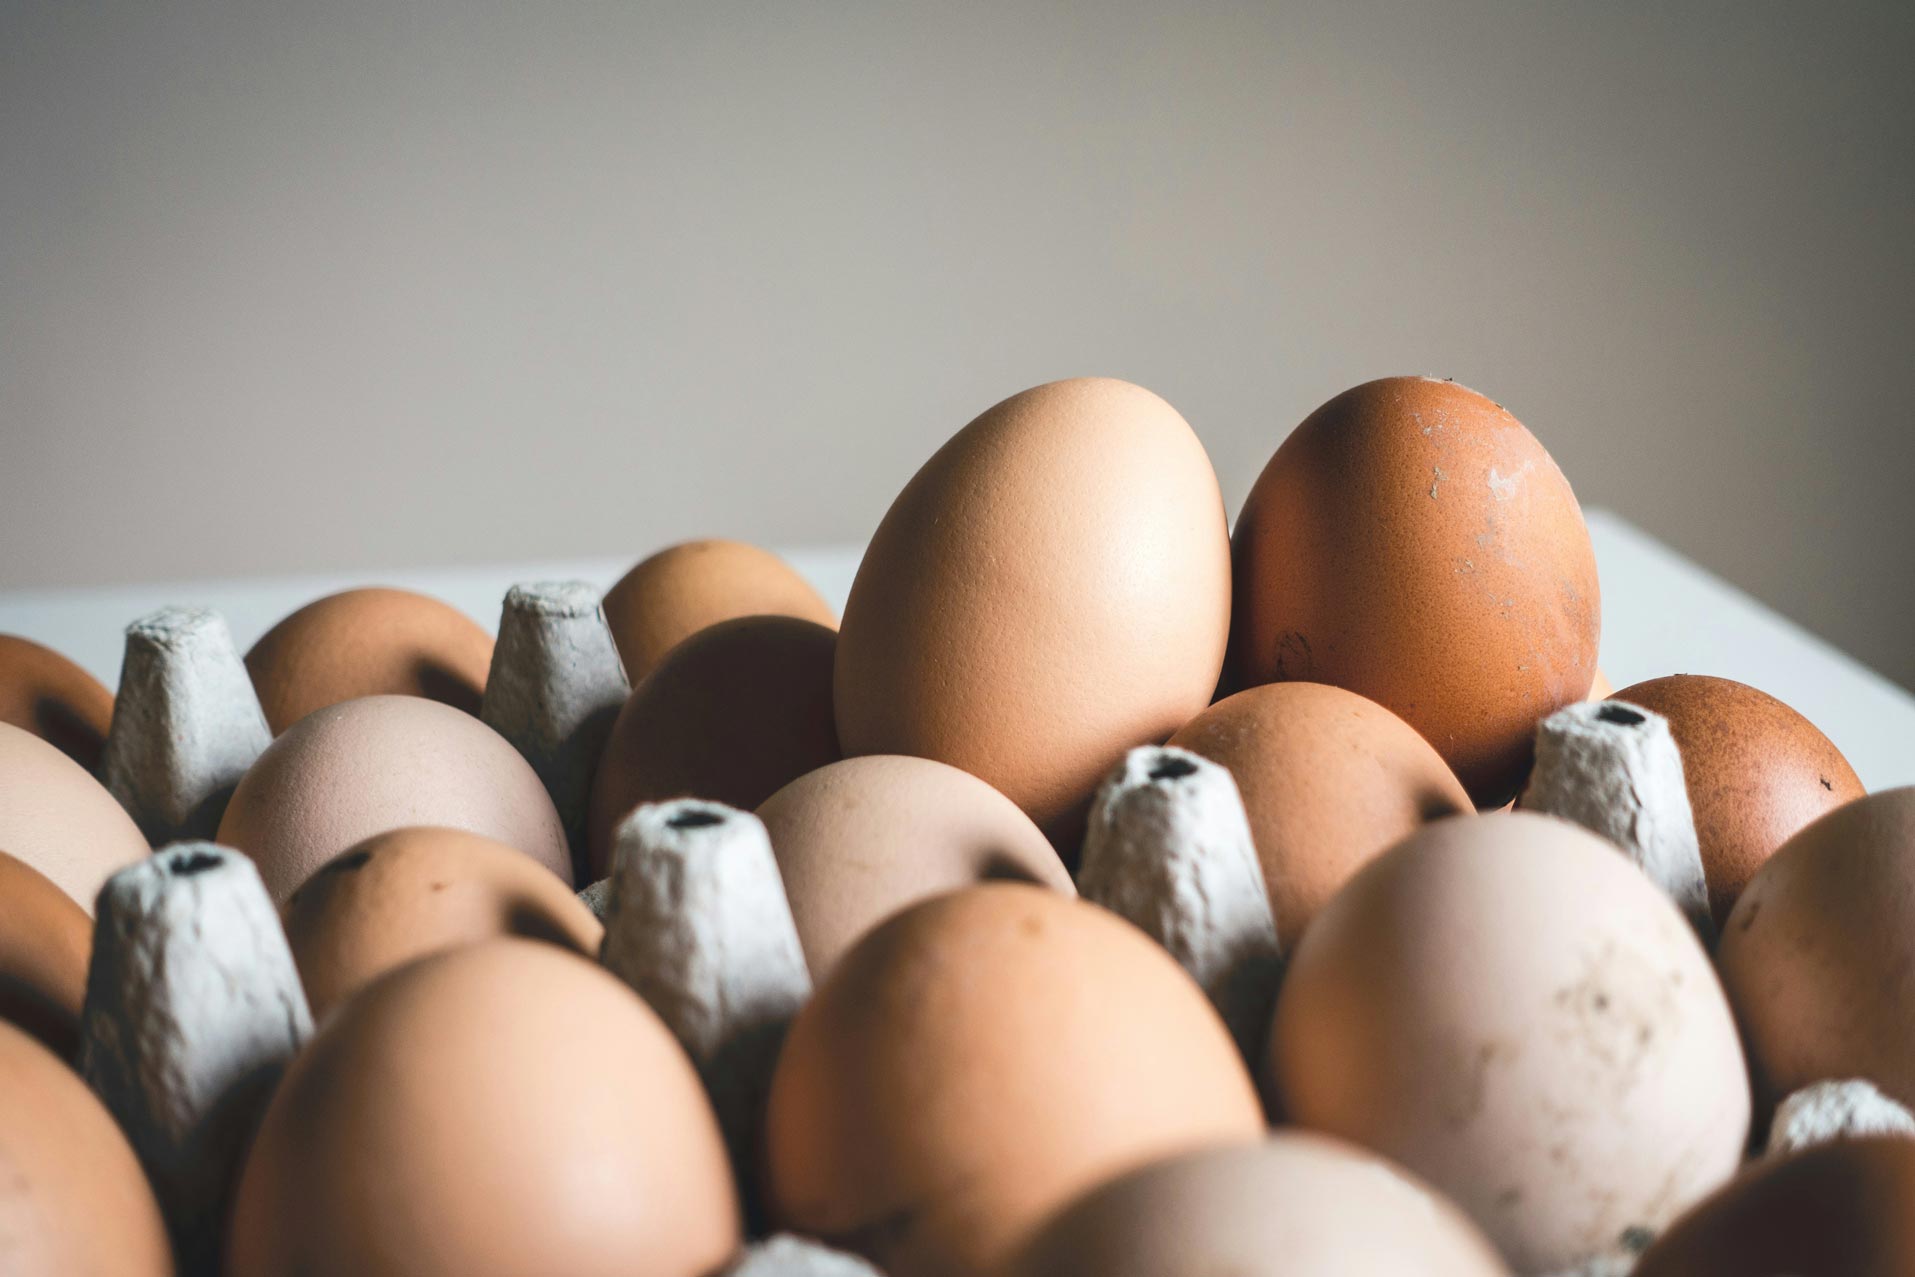 Trứng có lượng calo vừa phải và cung cấp protein tốt, rất phù hợp cho những bữa ăn. Ảnh minh hoạ: Hiệp Phạm